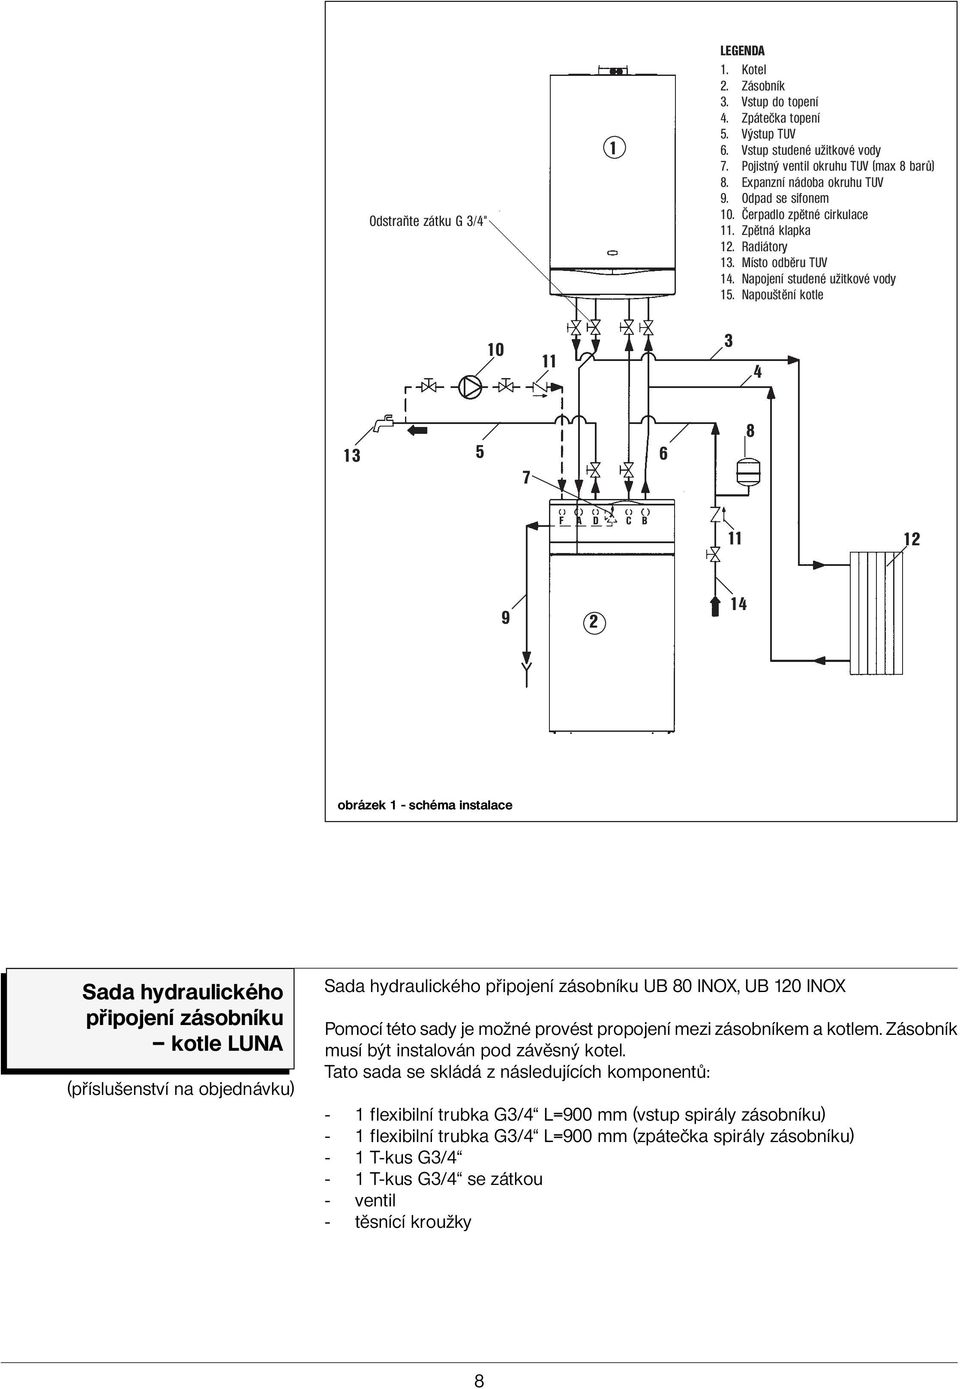 Napouštění kotle 10 11 3 4 13 5 7 6 8 F A D C B 11 12 9 2 14 obrázek 1 - schéma instalace Sada hydraulického připojení zásobníku kotle LUNA (příslušenství na objednávku) Sada hydraulického připojení